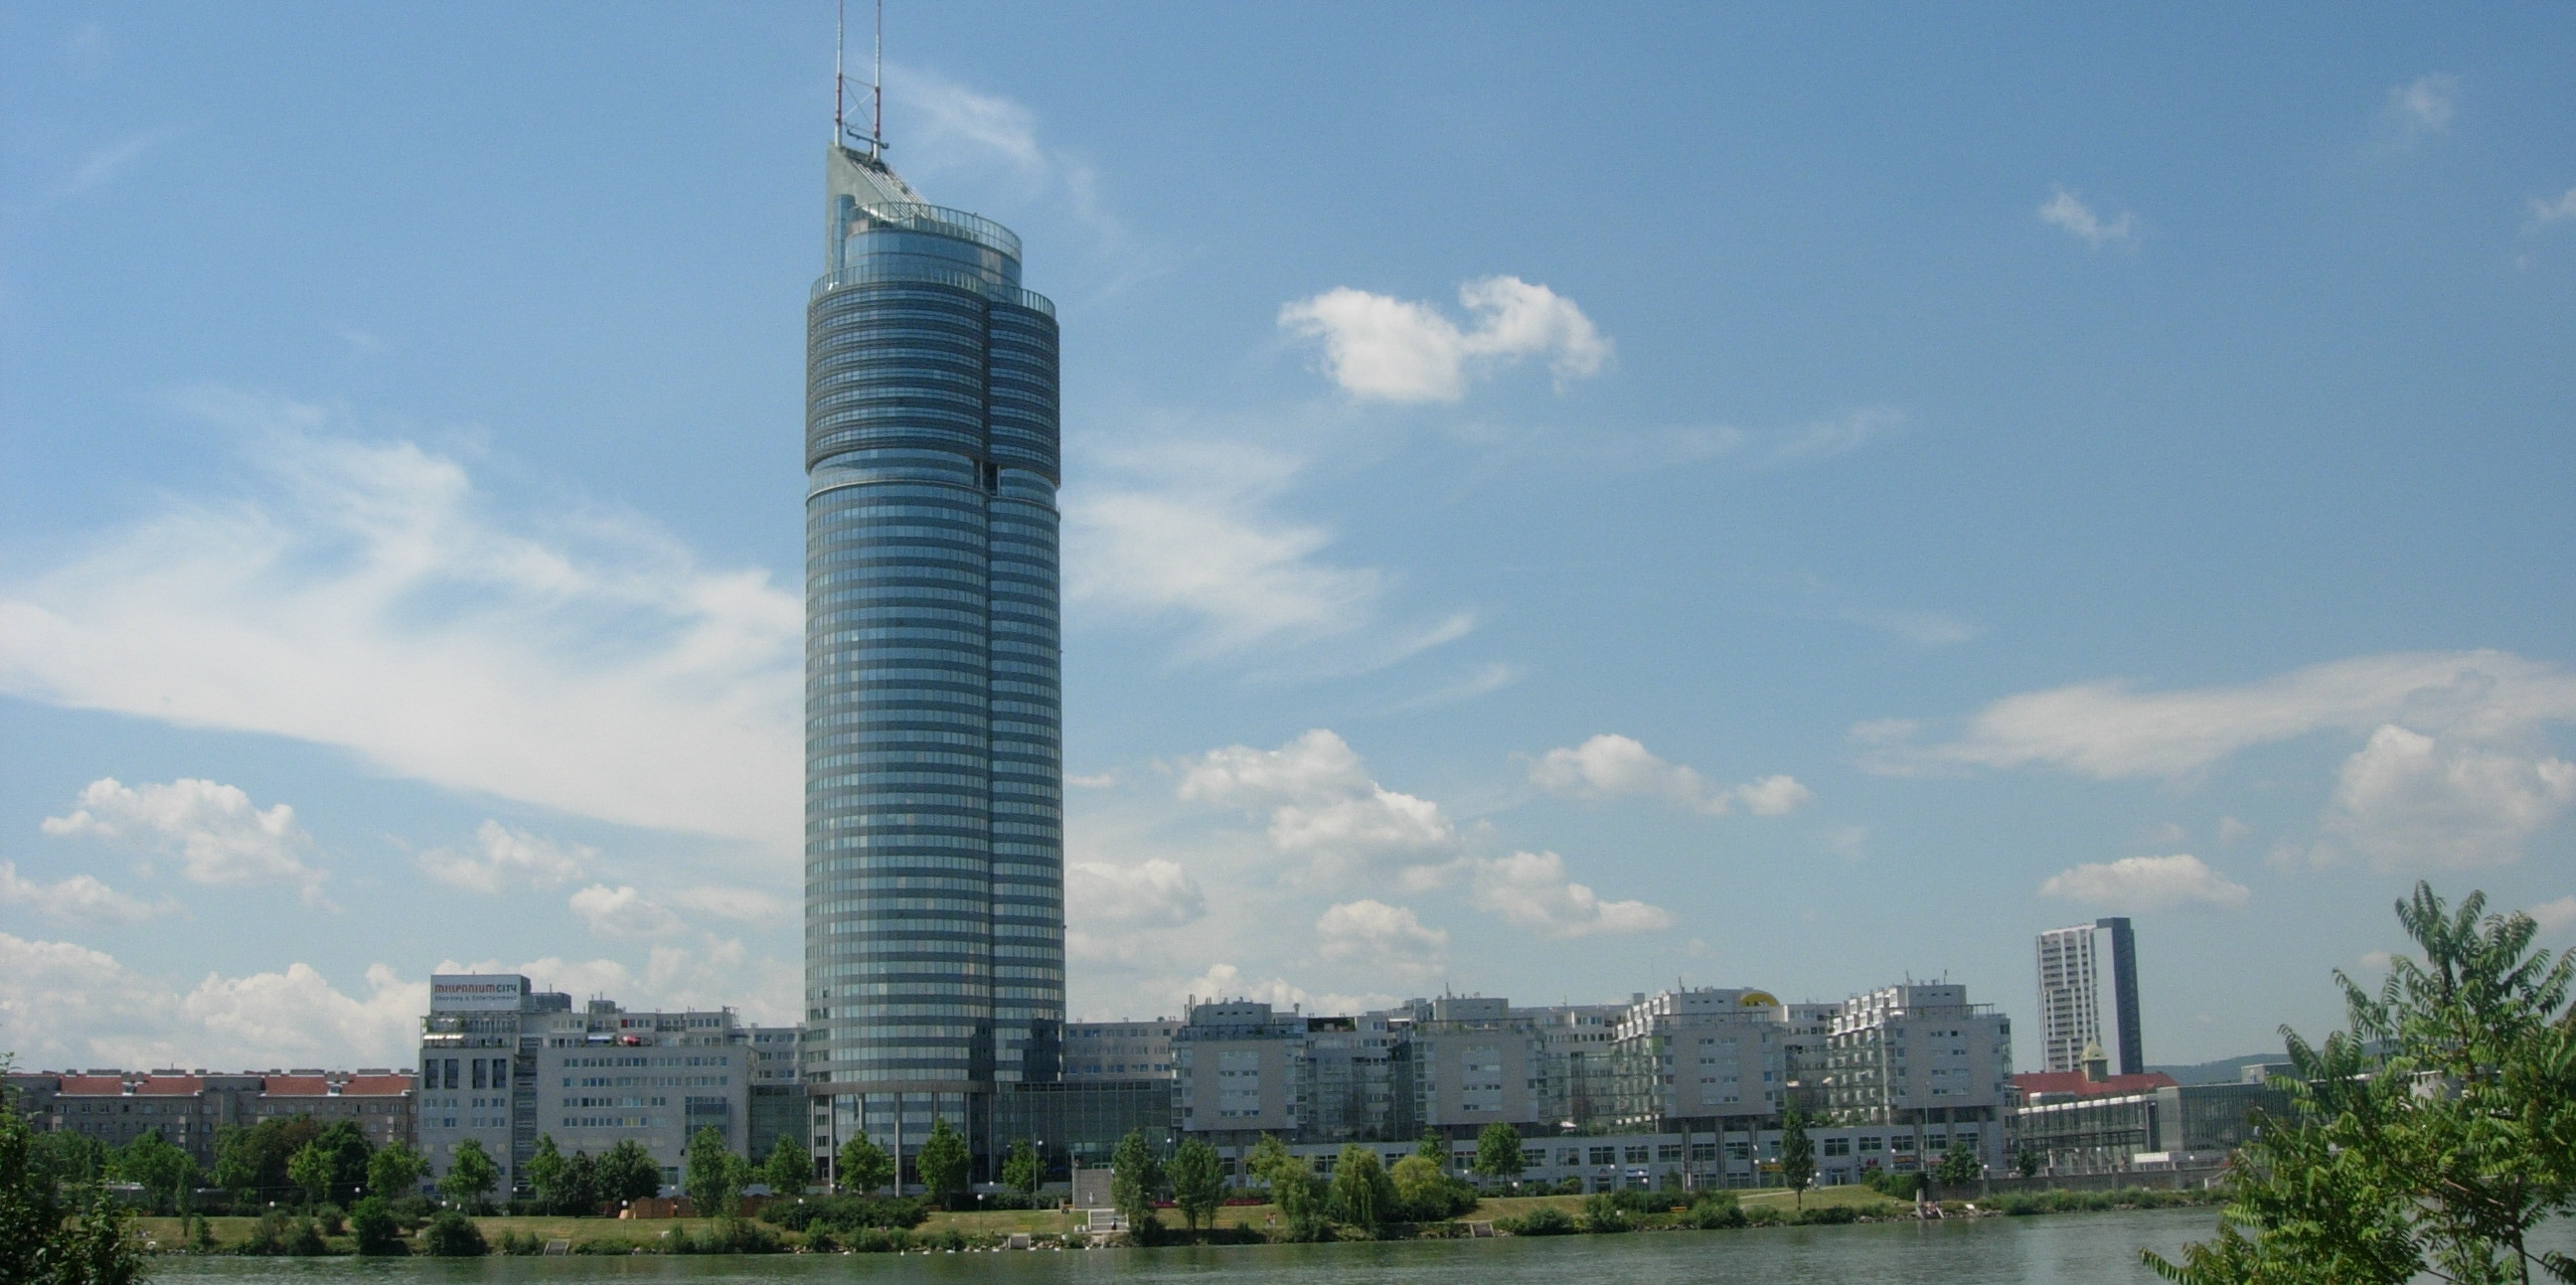 Blick auf ein bebautes Stadtgebiet in dem im Zentrum ein großer Wolkenkratzer in die Höhe ragt.